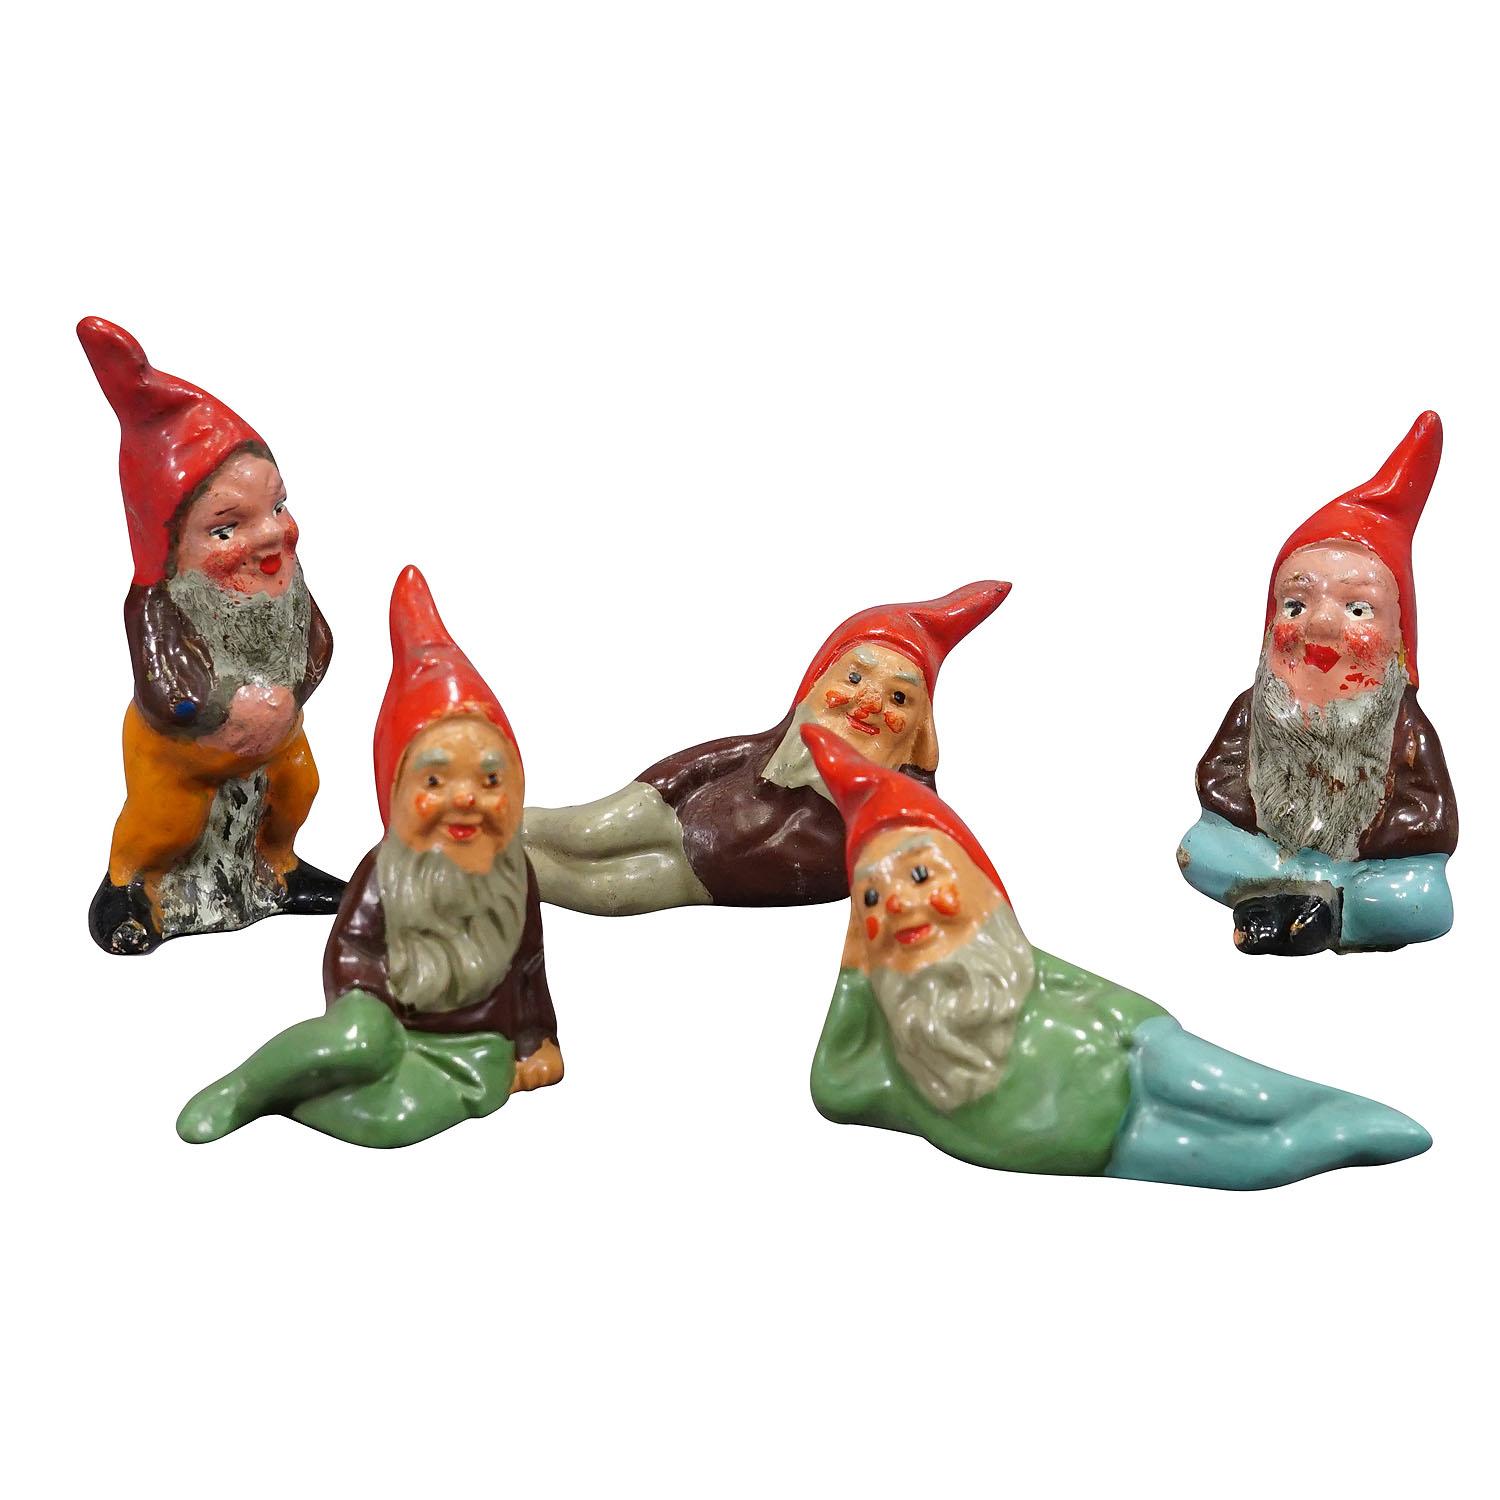 Fünf Zinn Terrakotta-Garten Gnomes, Deutschland ca. 1950er Jahre

Ein skurriles Set von fünf kleinen Gartenzwergen, hergestellt in Deutschland ca. 1950er Jahre, wahrscheinlich von Heissner. Sie sind aus Terrakotta gefertigt und von Hand mit